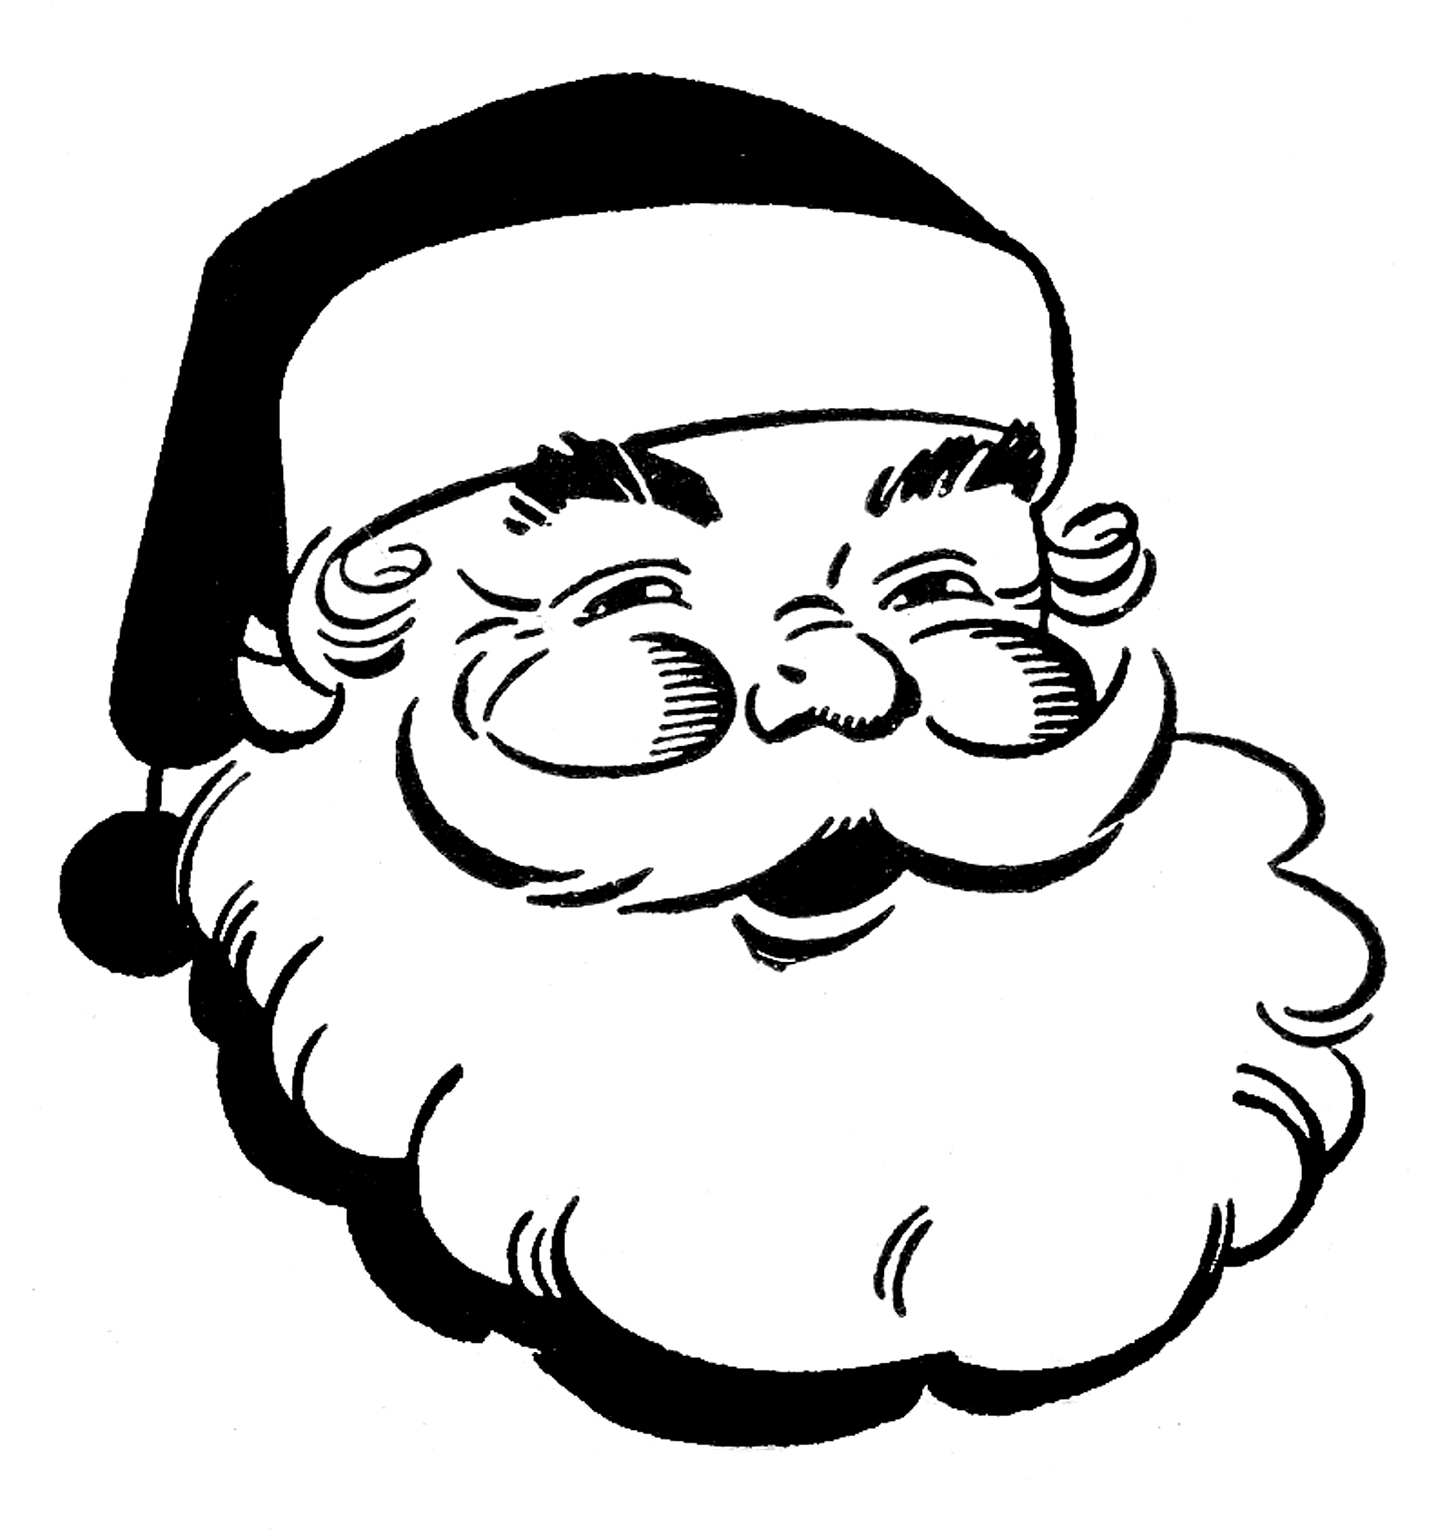 Retro Christmas Clip Art - Jolly Santa - The Graphics Fairy